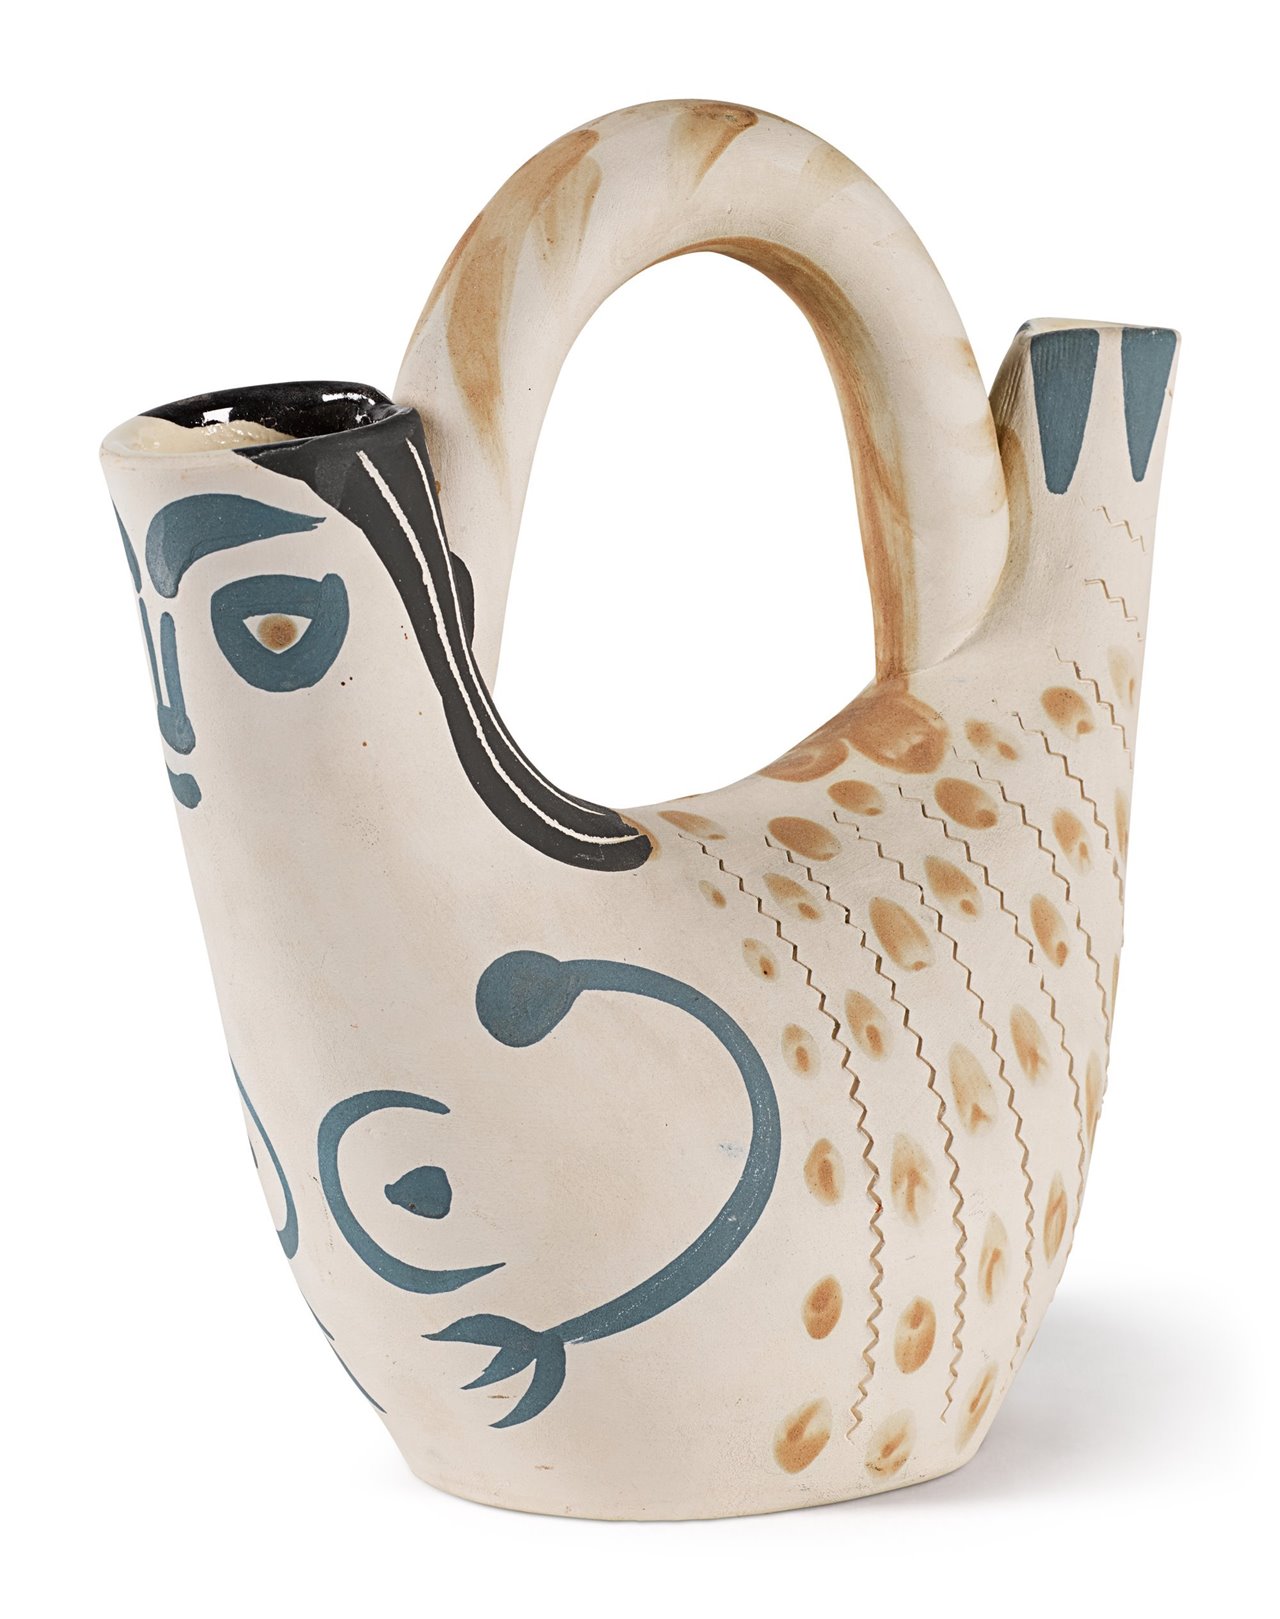 Una de las ocho cerámicas de Picasso escogidas.